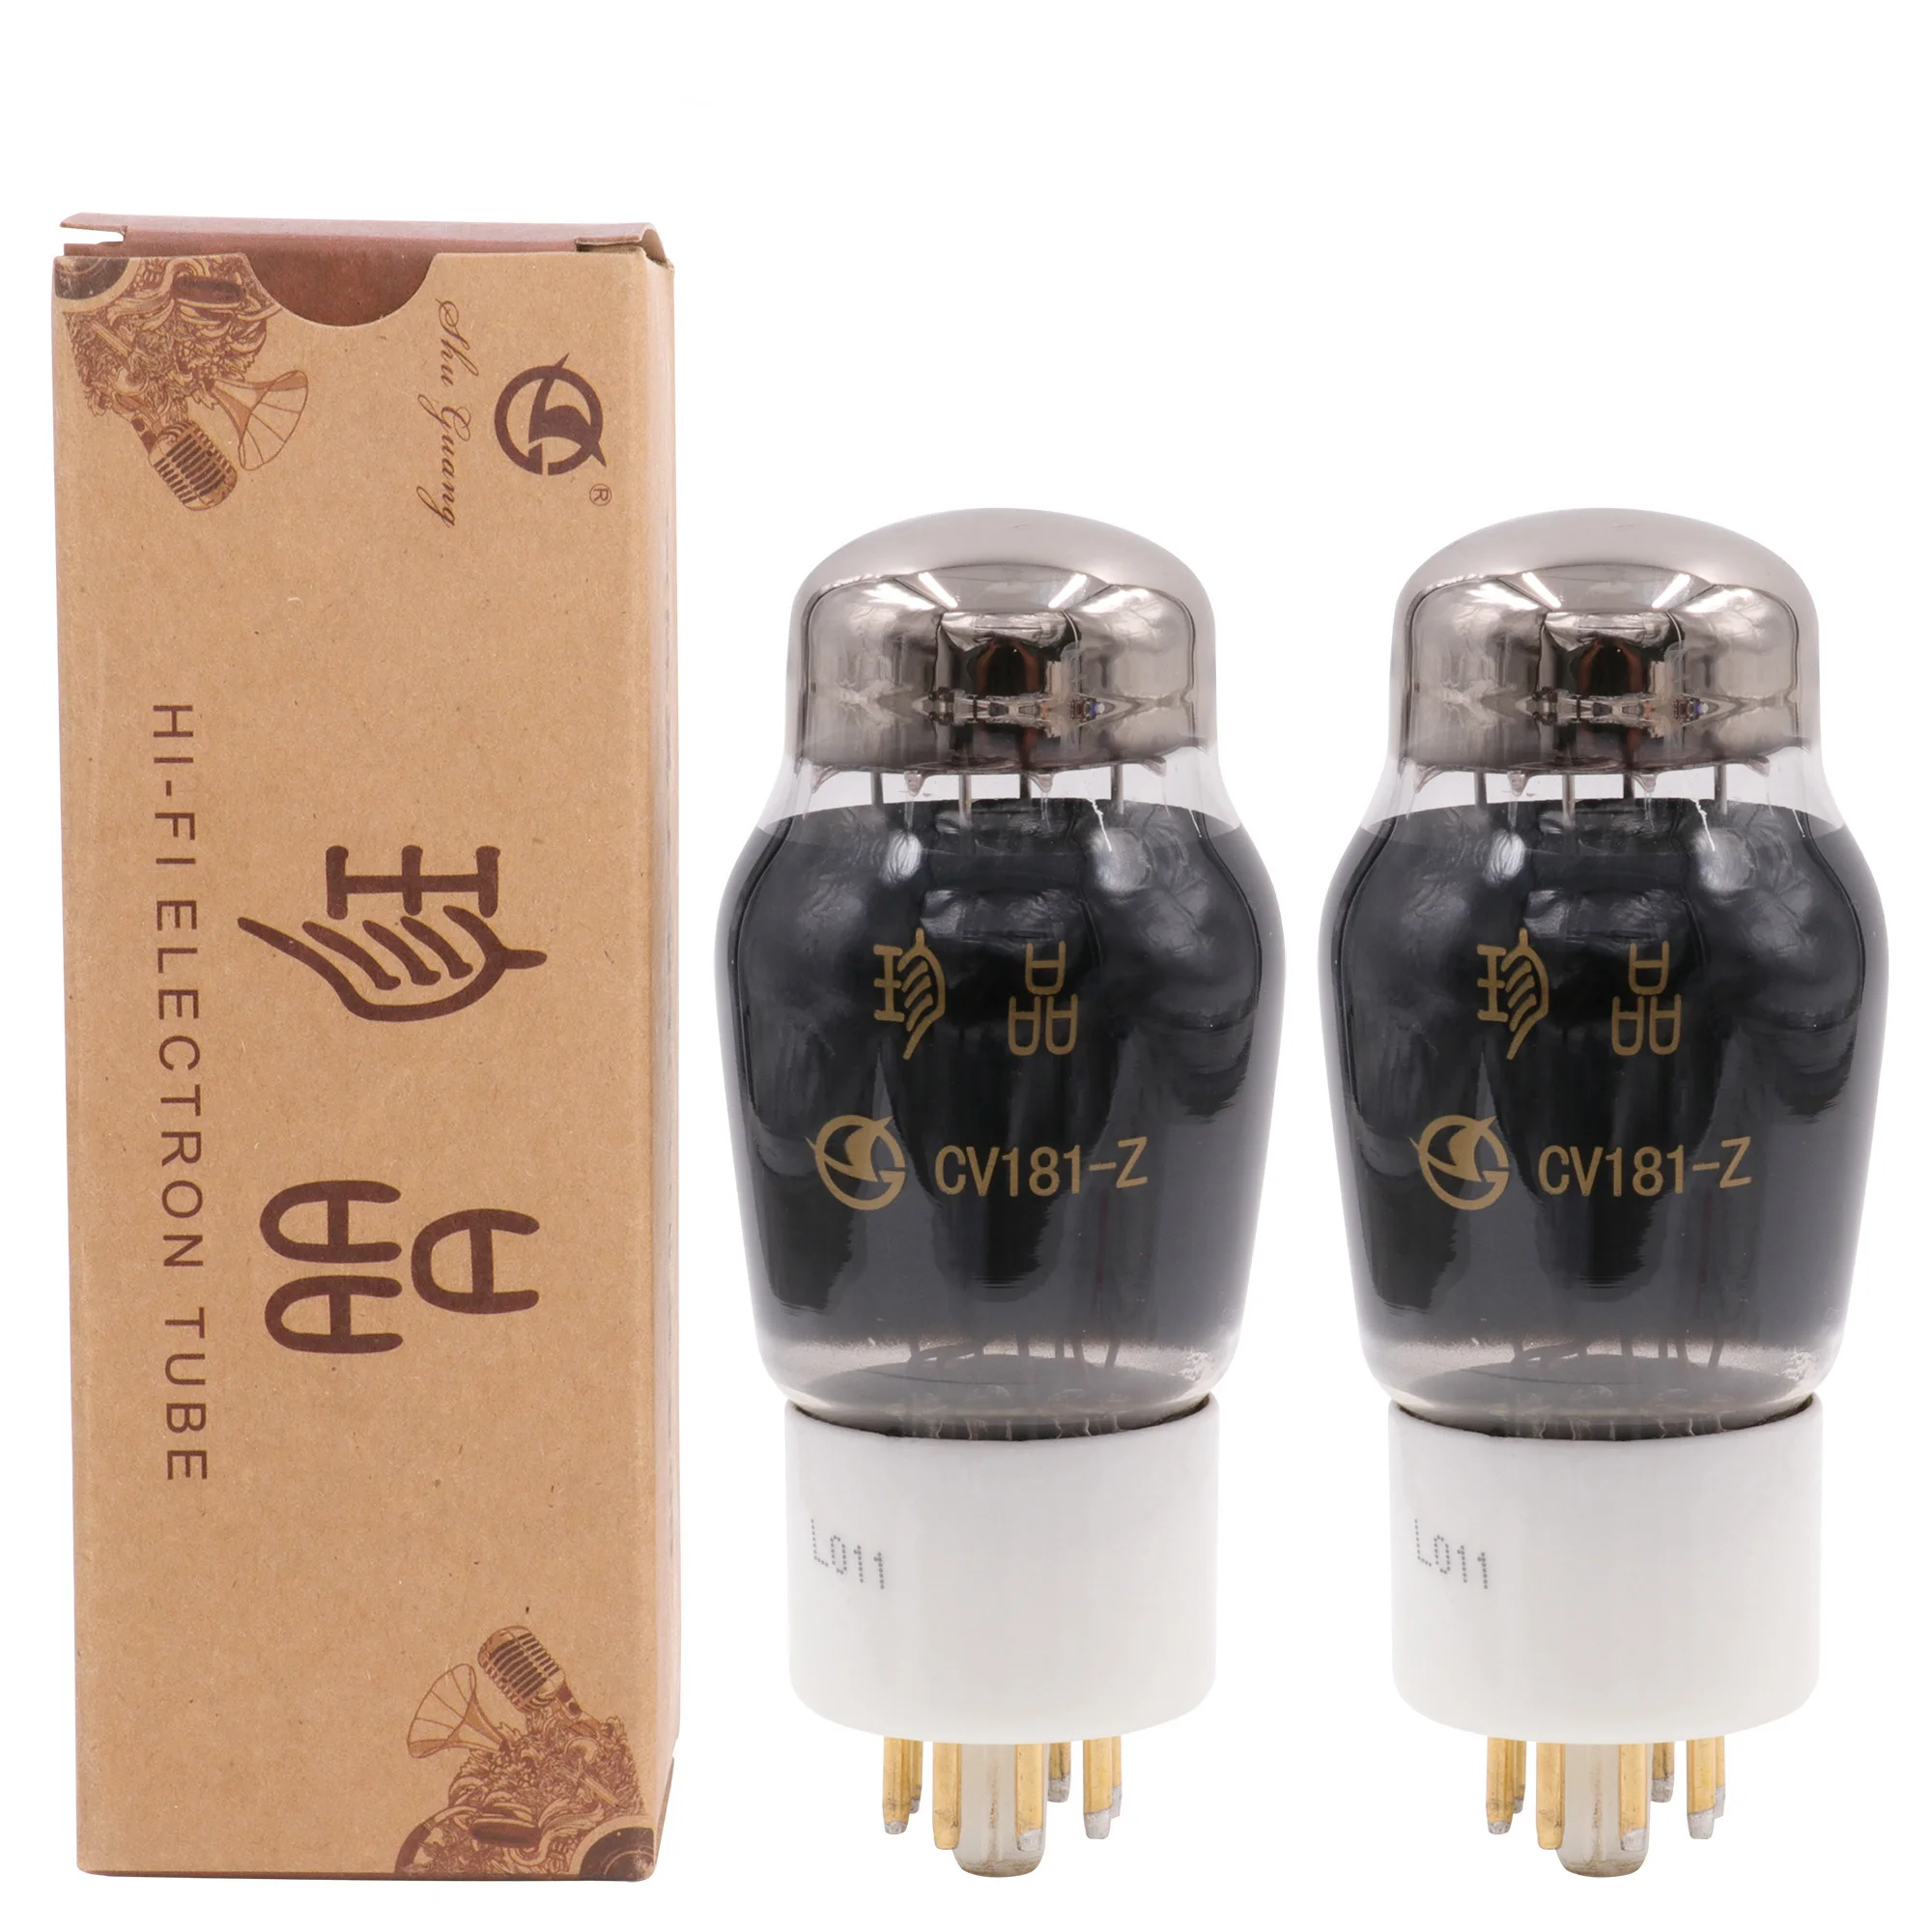 Alta qualidade CV181-Z substituição do tubo de vácuo 6sn7gt 6sn7 we6sn7 6n8p tubo amplificador de tubo de áudio de alta fidelidade fabricante diy correspondência